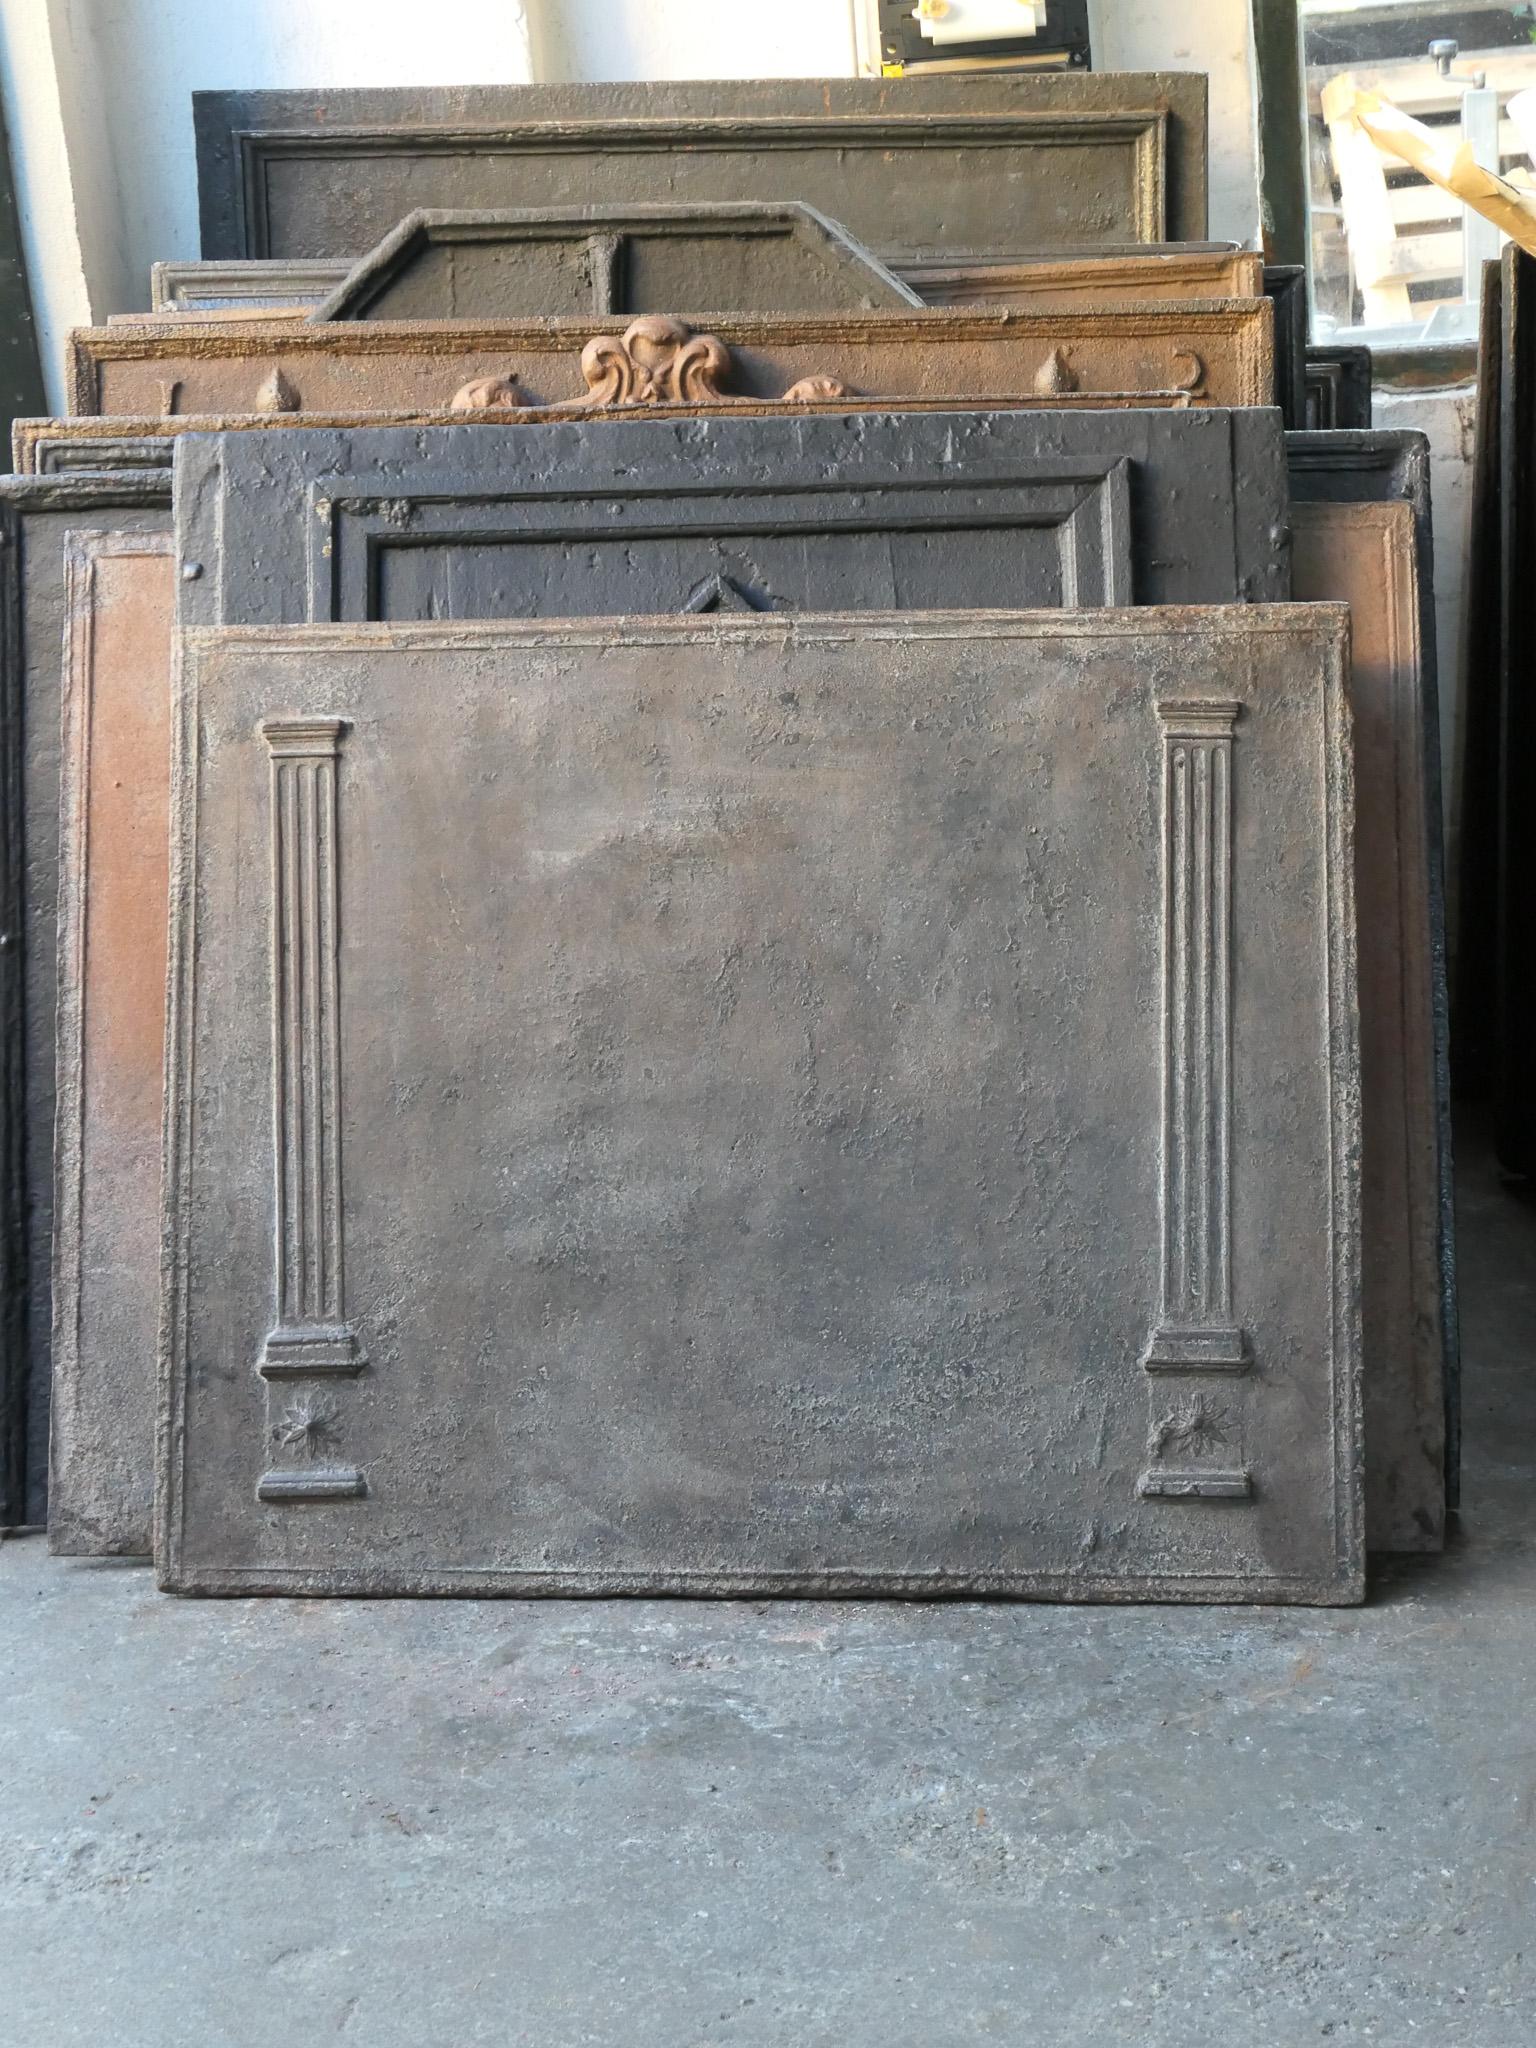 Plaque de cheminée néoclassique française de la fin du XVIIIe siècle et du début du XIXe siècle, avec deux piliers de liberté. Les piliers symbolisent la valeur liberté, l'une des trois valeurs de la Révolution française. 

La plaque de cheminée est